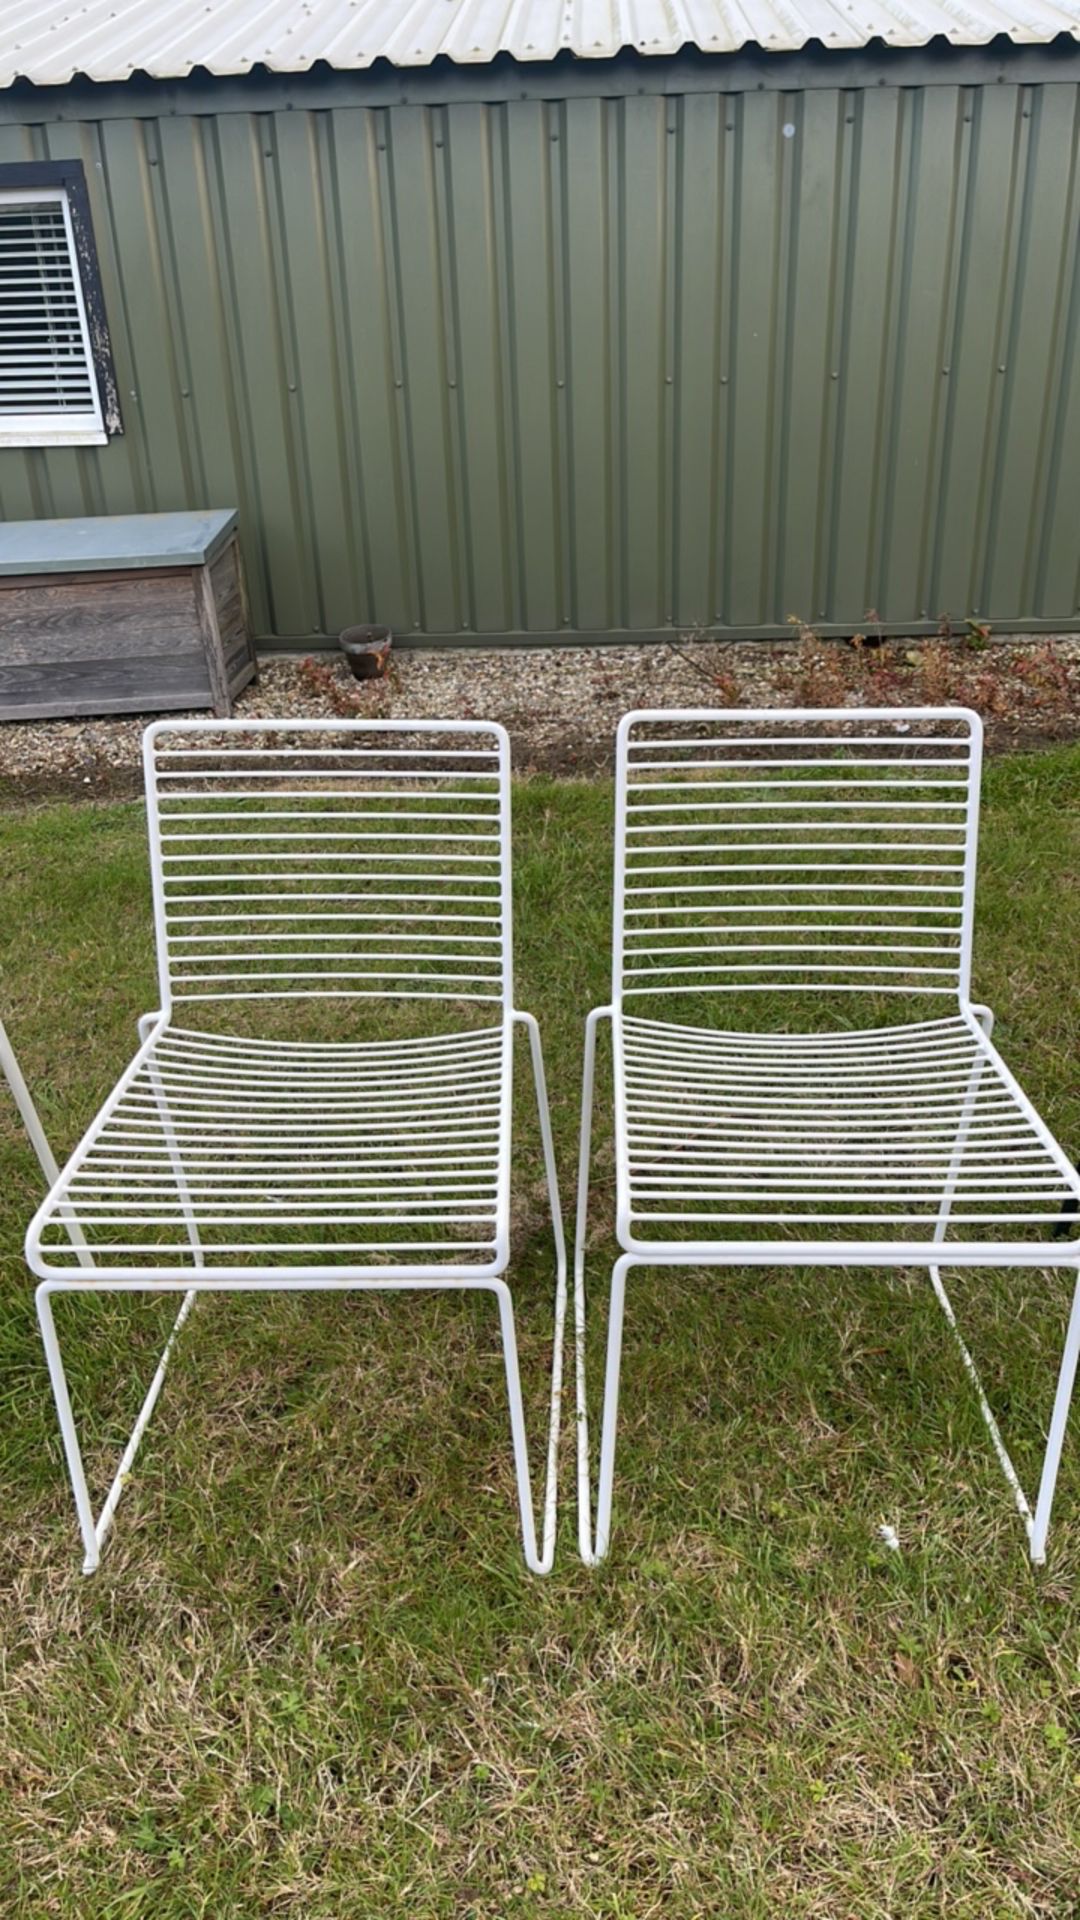 10x Assorted Garden/Outdoor Metal Chairs - Image 3 of 6